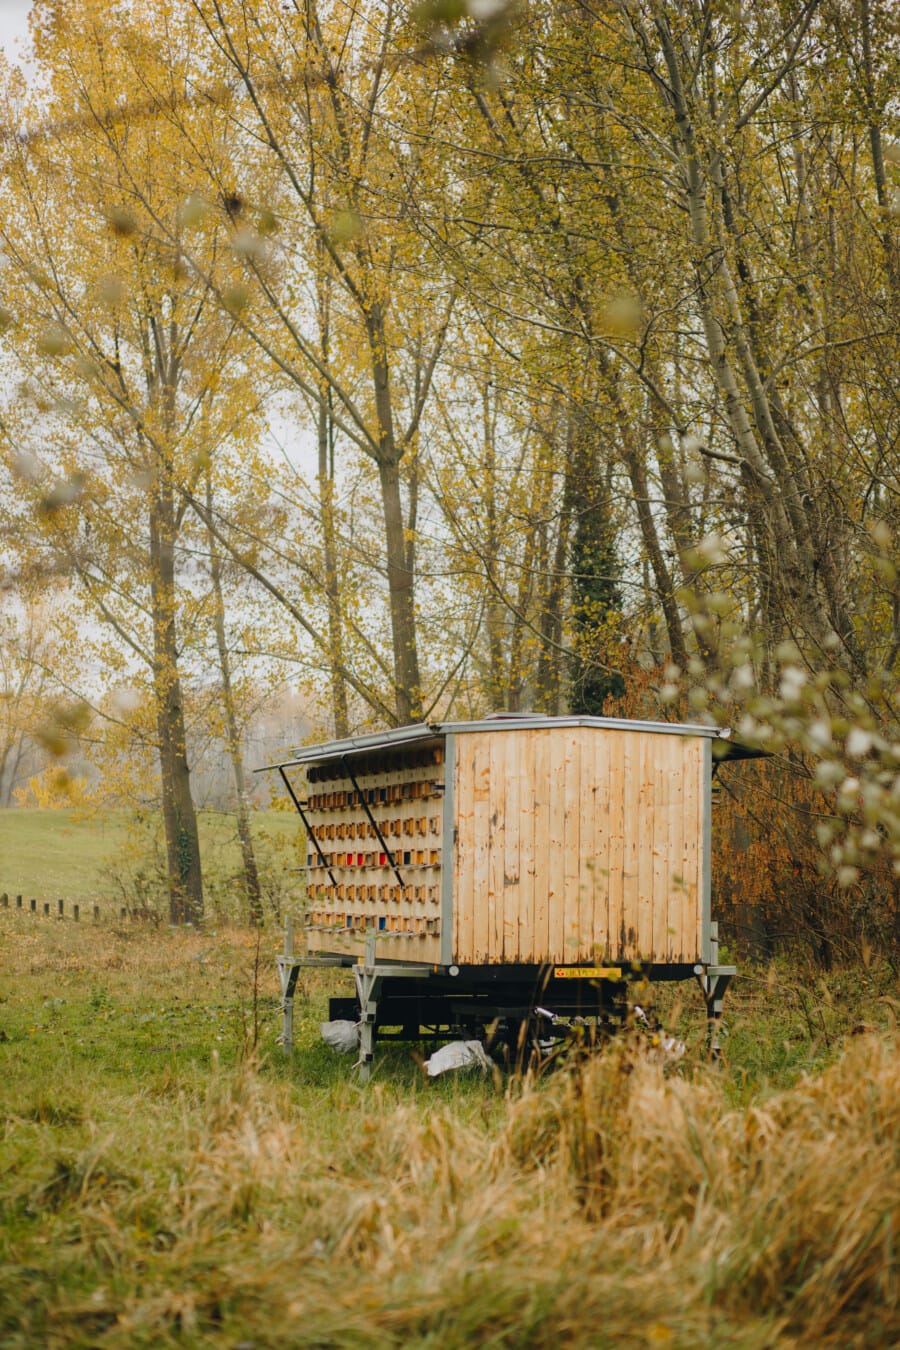 蜜蜂, 拖车, 木, 老, 户外, 树, 性质, 农业, 住房, 车辆